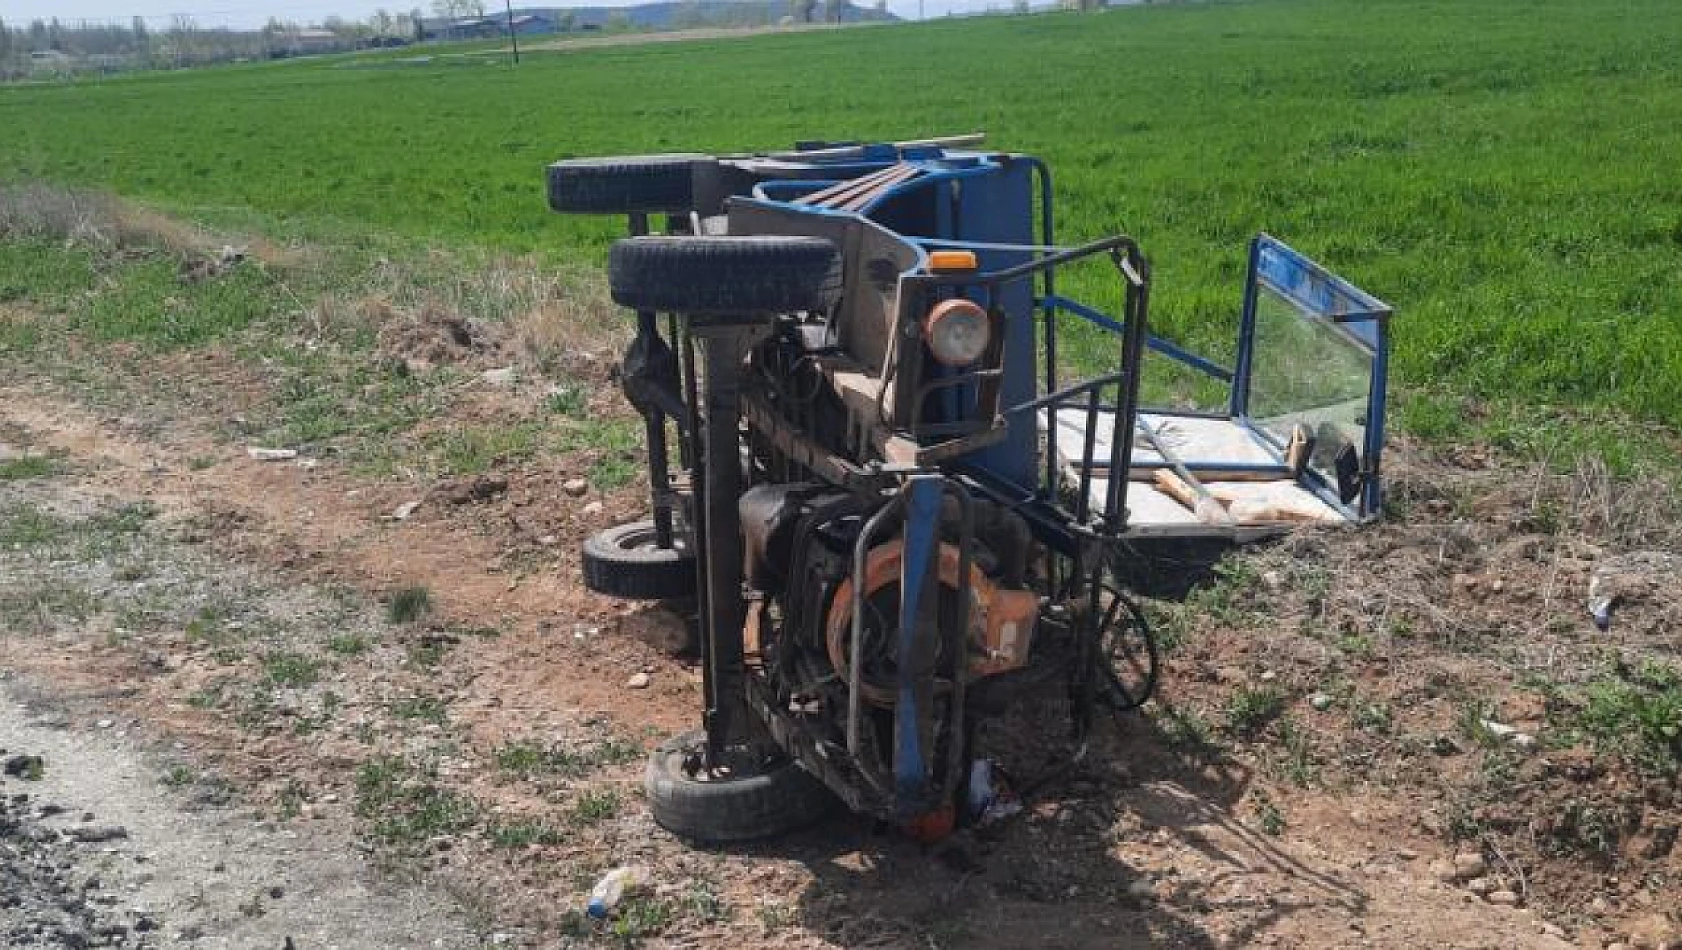  Konya'da minibüs ile patpat çarpıştı: 1 ölü